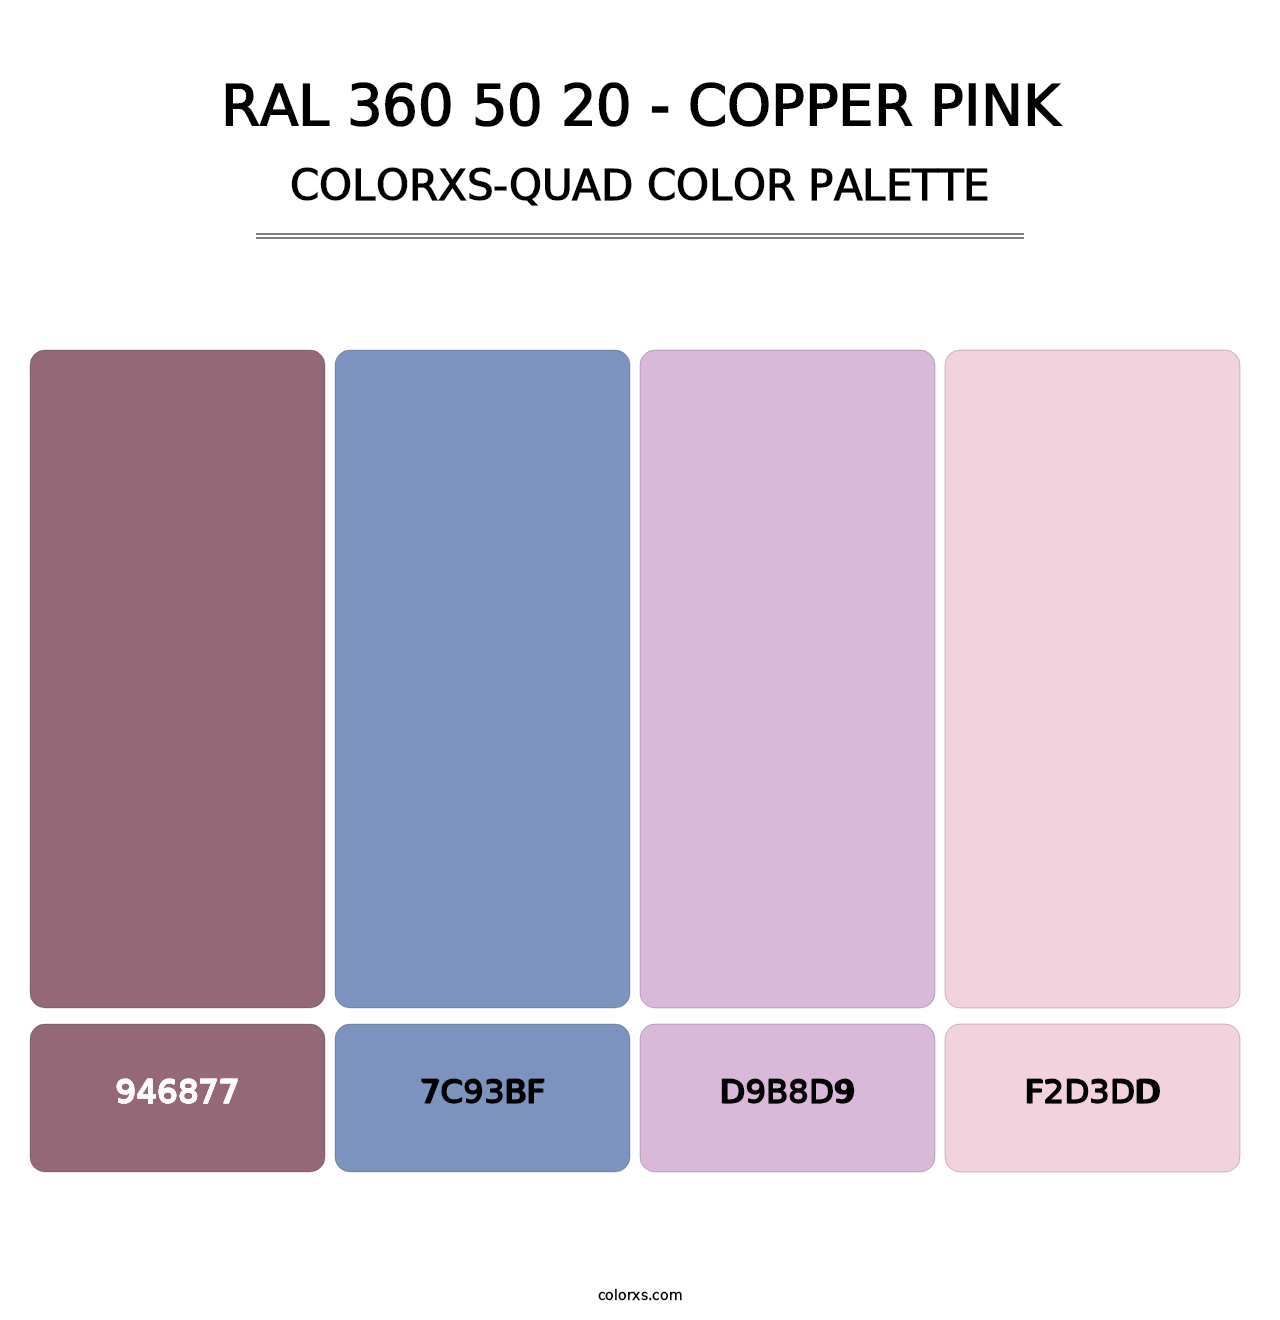 RAL 360 50 20 - Copper Pink - Colorxs Quad Palette